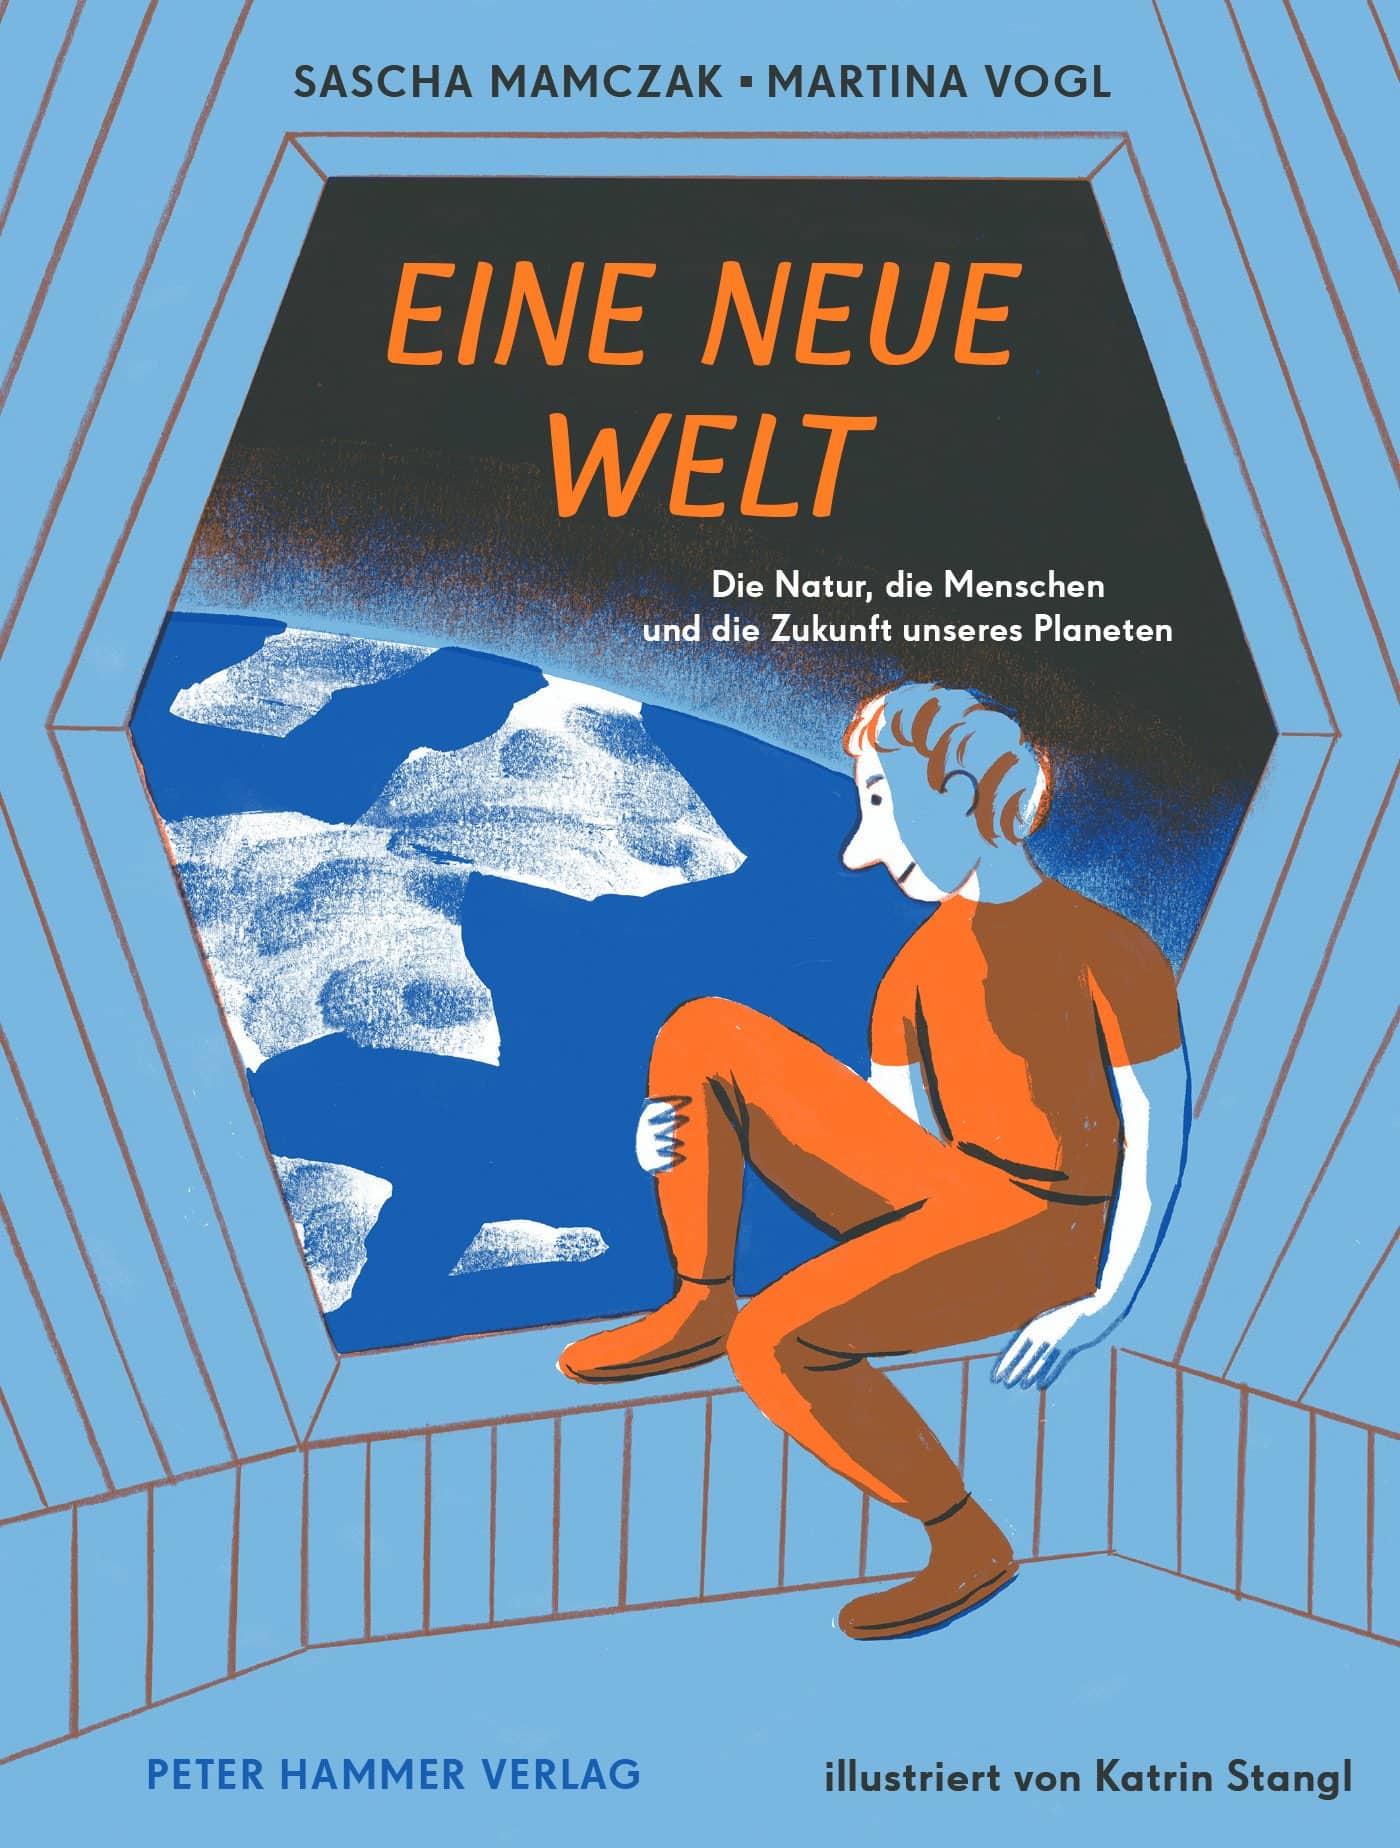 Deutscher Jugendliteraturpreis 2021, nominiertes Sachbuch für Kinder: Eine neue Welt // HIMBEER